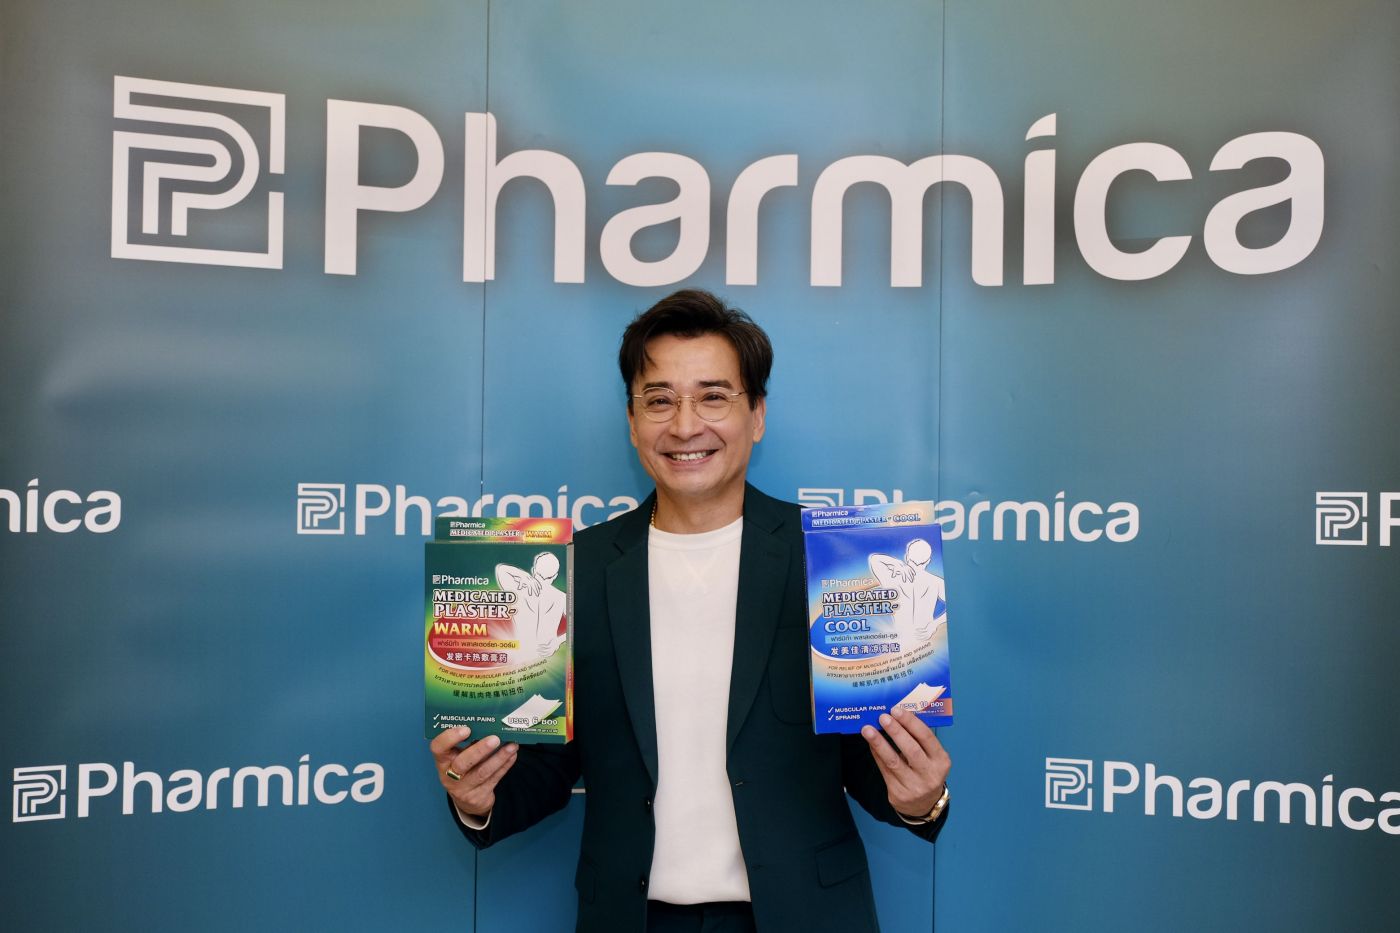 พิรุณโรจน์ ไกรสุรพงศ์ CEO เอ็นบีดี เฮลท์แคร์ เปิดตัว “Pharmica Plaster” แผ่นแปะบรรเทาปวดเมื่อยกล้ามเนื้อ เคล็ดขัดยอก พร้อมเปิดตัว ‘นีโน่-เมทนี’ พรีเซ็นเตอร์คนแรกในประเทศไทย